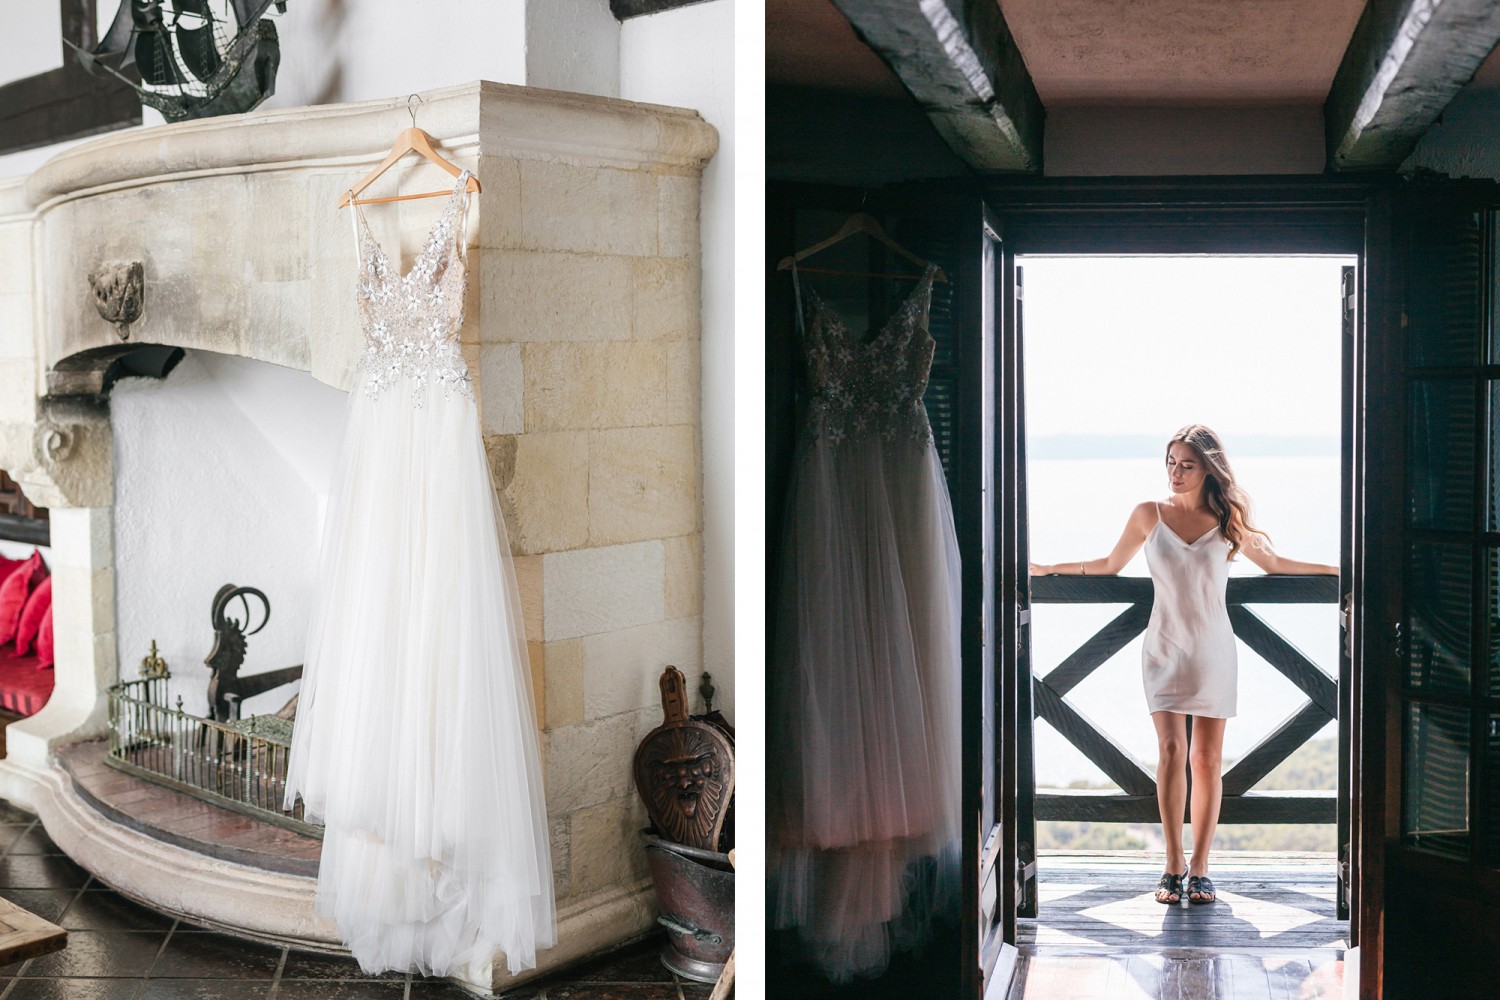 Φωτογραφίες γάμου | Leo & Santra στη Χαλκιδική